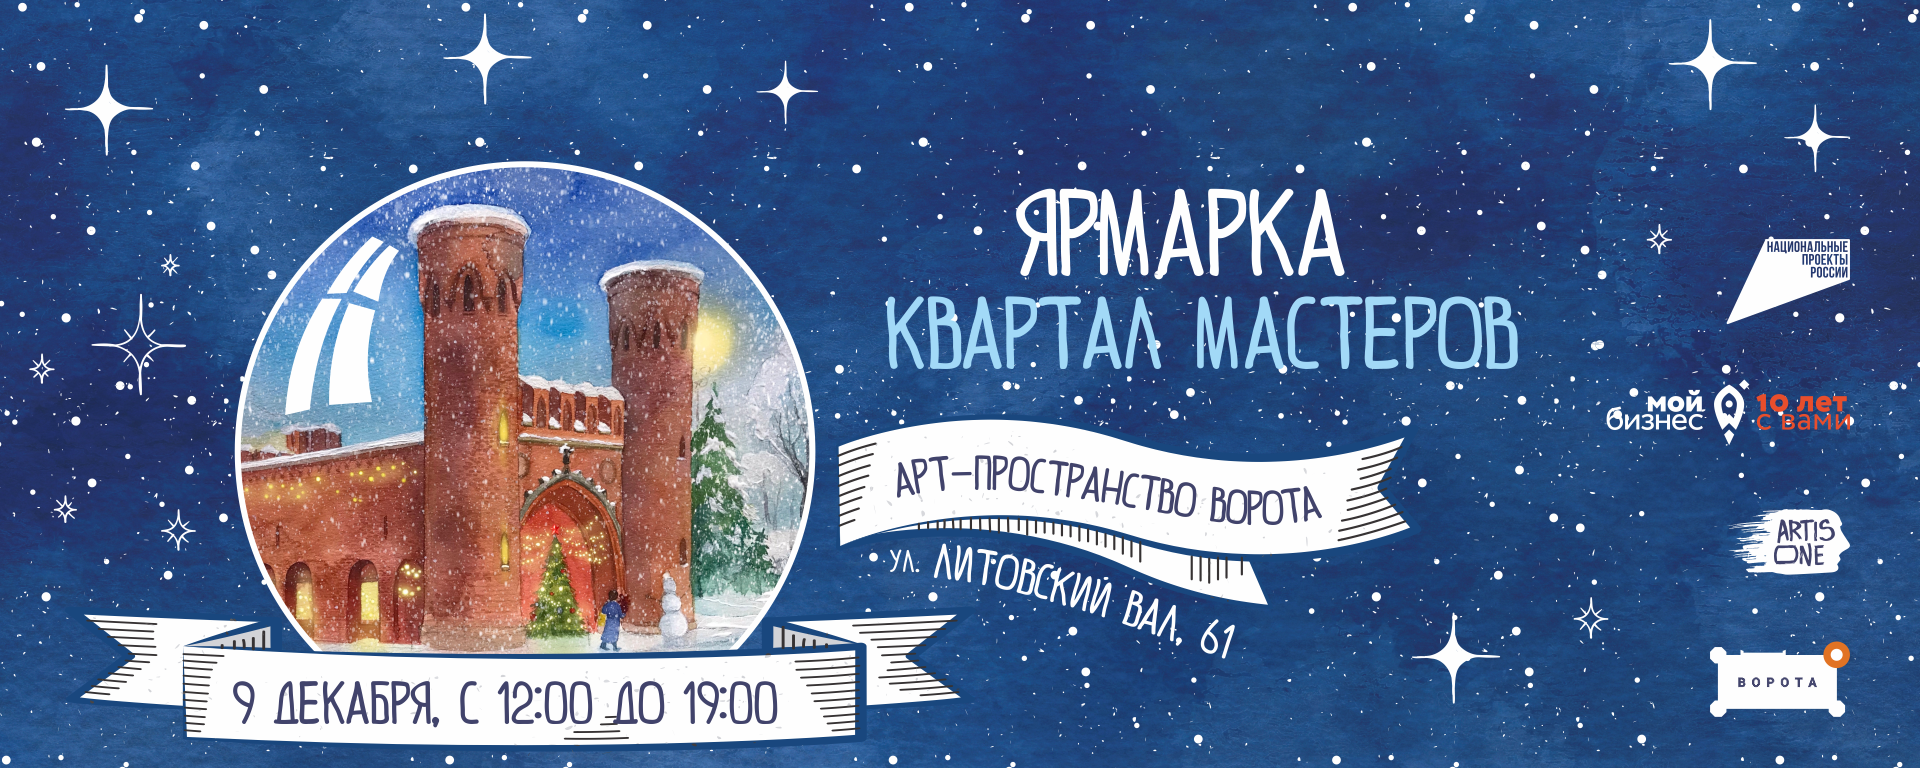 В Калининграде пройдёт ярмарка «Квартал мастеров»